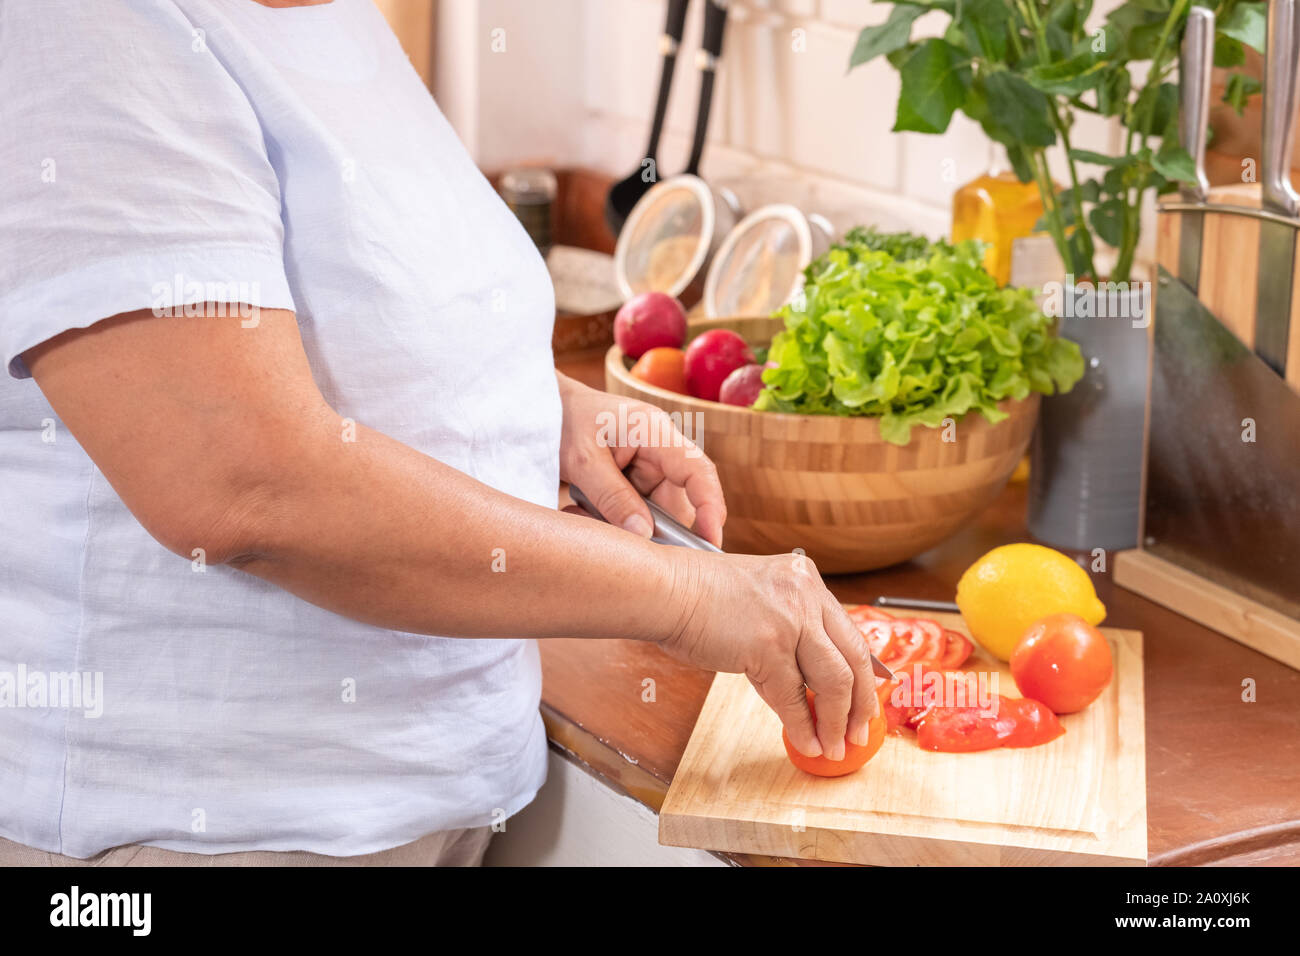 Geschlossen bis senior Hand schneiden Tomaten auf Holz Schneidebrett. Vorbereitung von Salat, gesunden Ruhestand lifestyle Konzept. Stockfoto